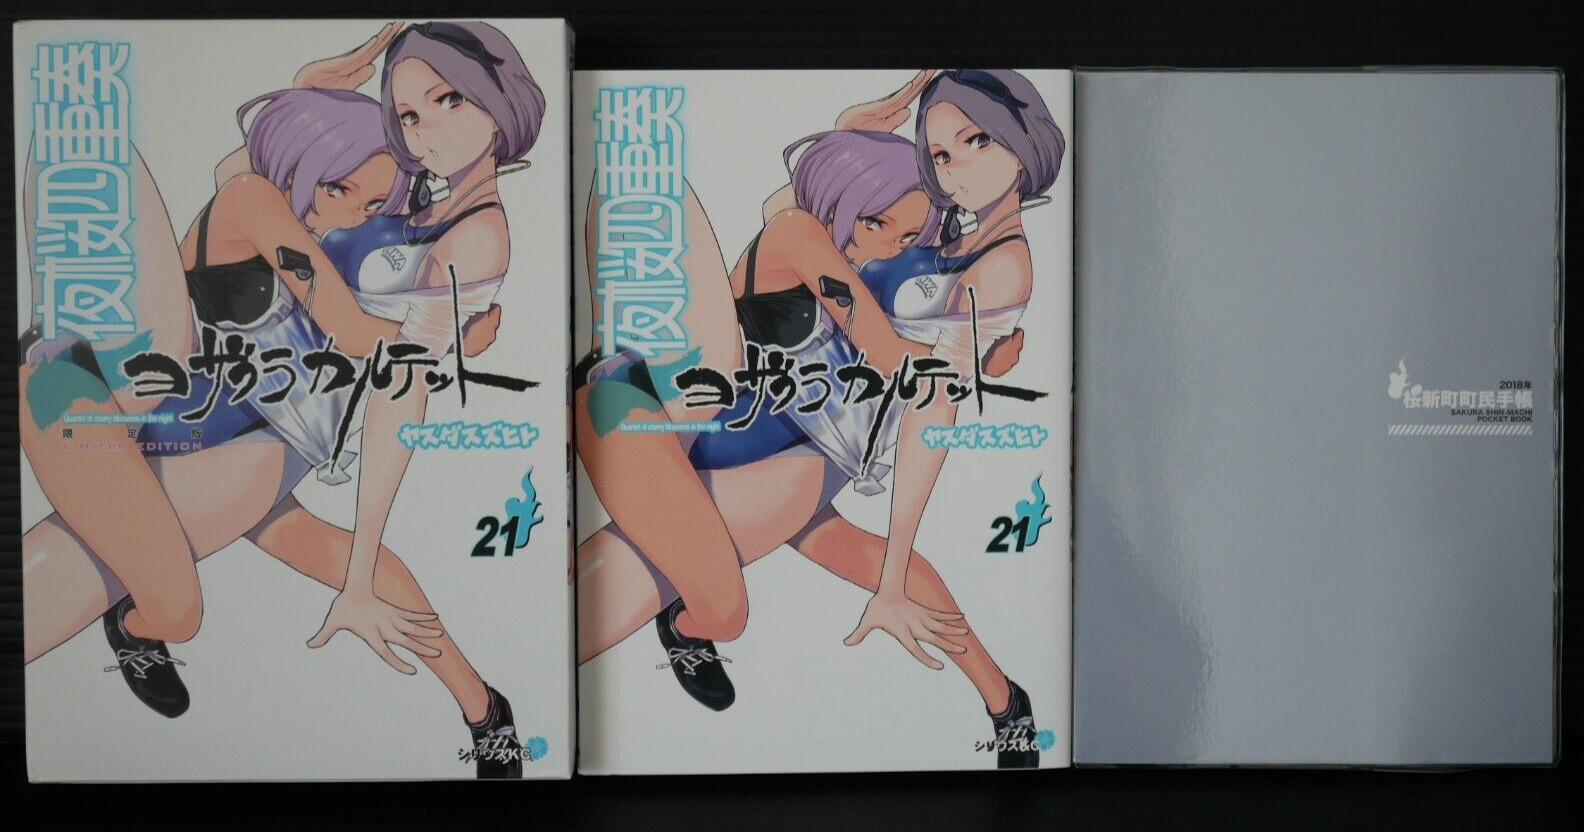 SHOHAN: Yozakura Quartet Vol.21 Manga Limited Edition by Suzuhito Yasuda